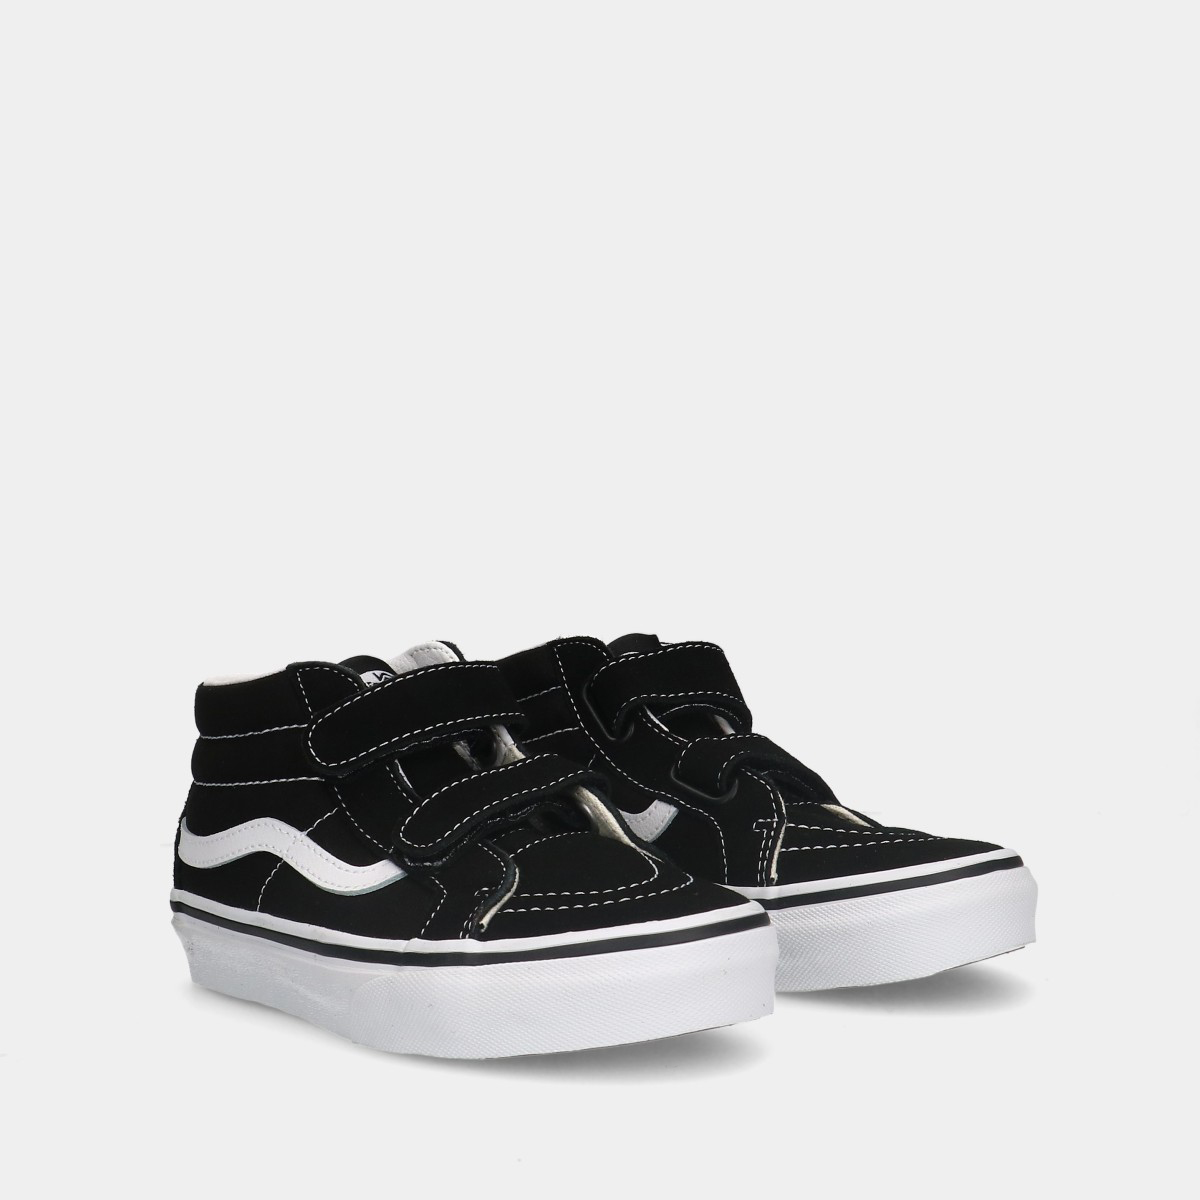 Vans SK8-HI Reissue V Black/True White  unisex kinder sneakers